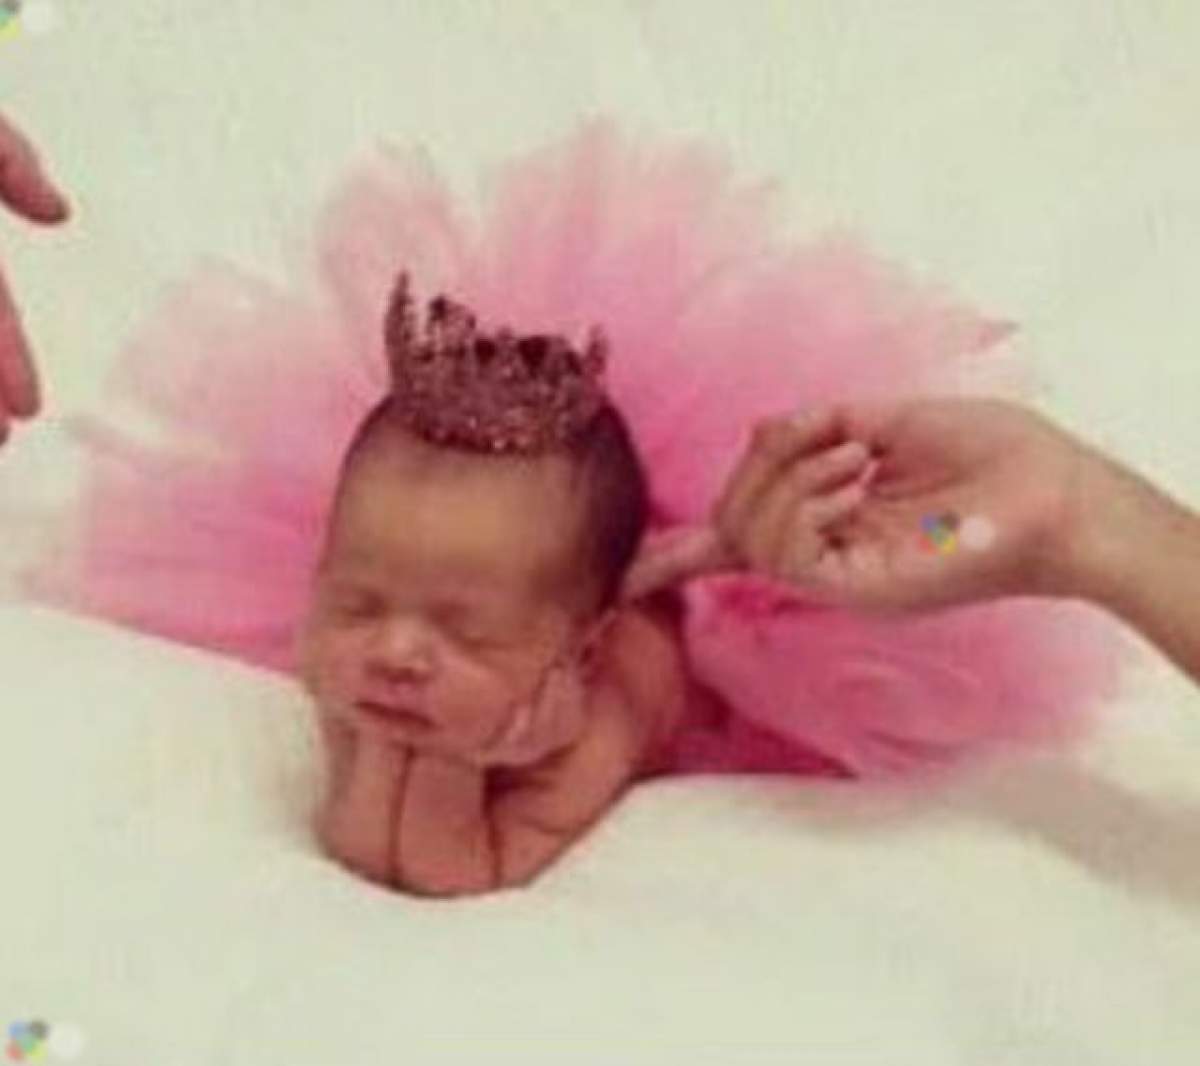 S-a născut prematur, dar este deja vedetă pe internet! Al cui este acest bebeluş minuscul?